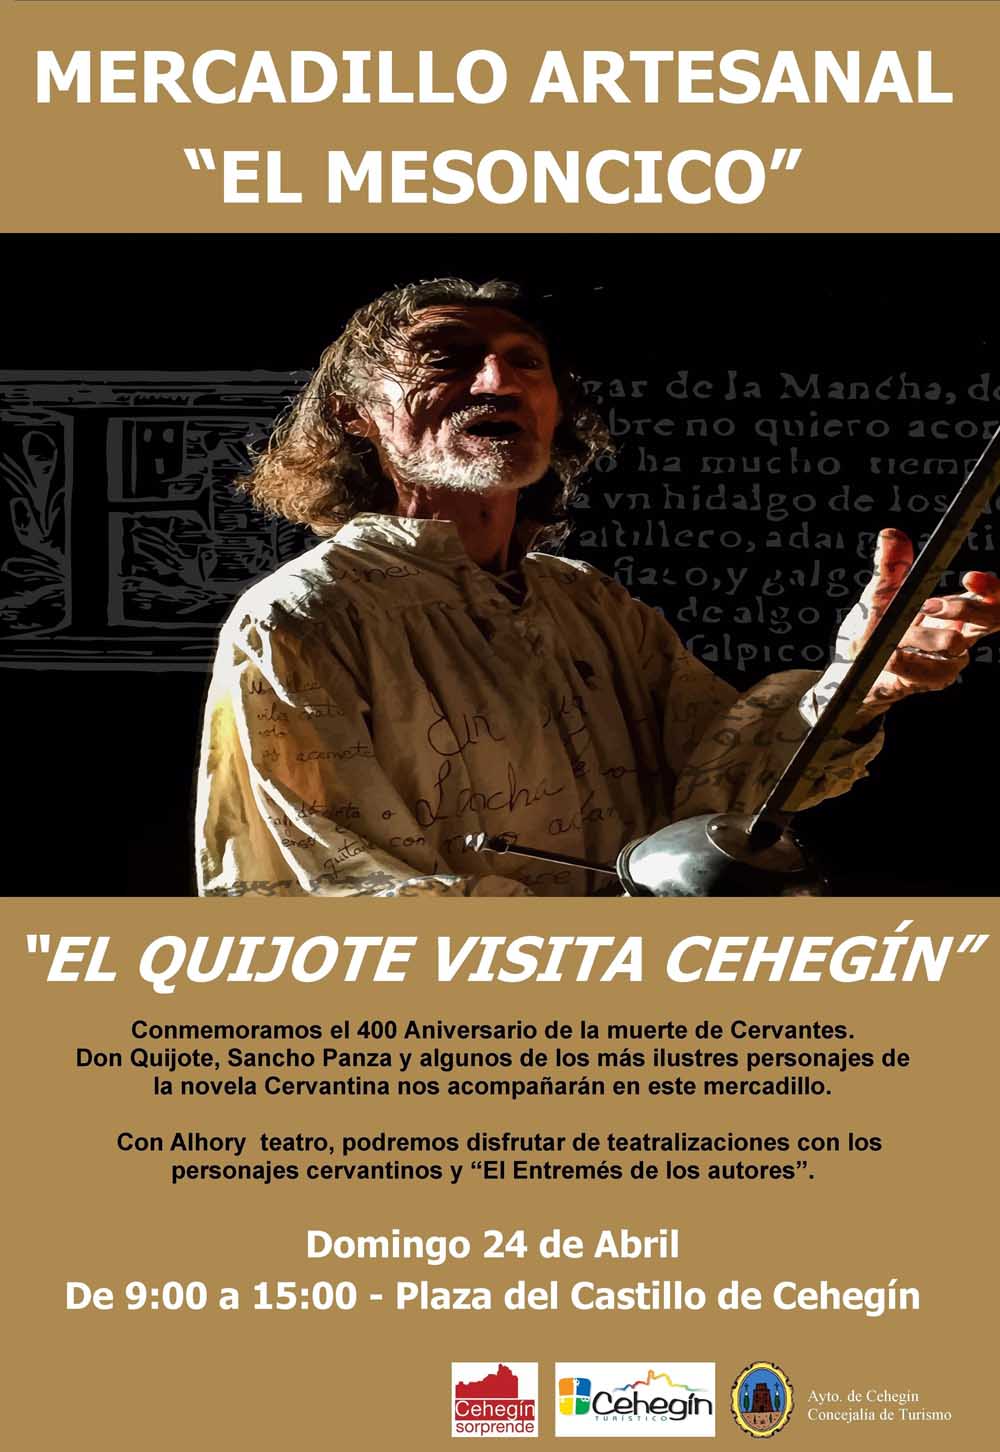 El Mercadillo “El Mesoncico” recordará a Cervantes este domingo